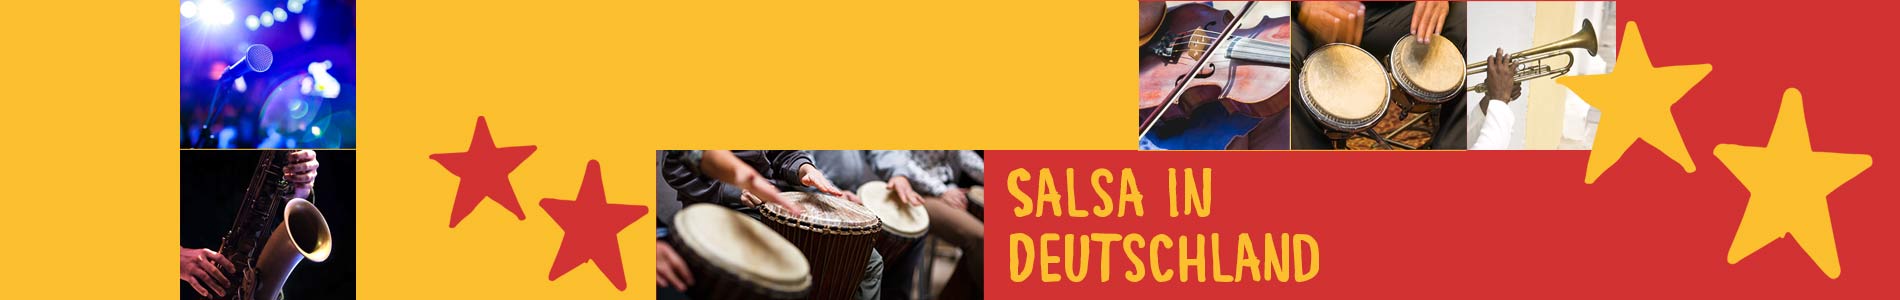 Salsa in Bühlerzell – Salsa lernen und tanzen, Tanzkurse, Partys, Veranstaltungen